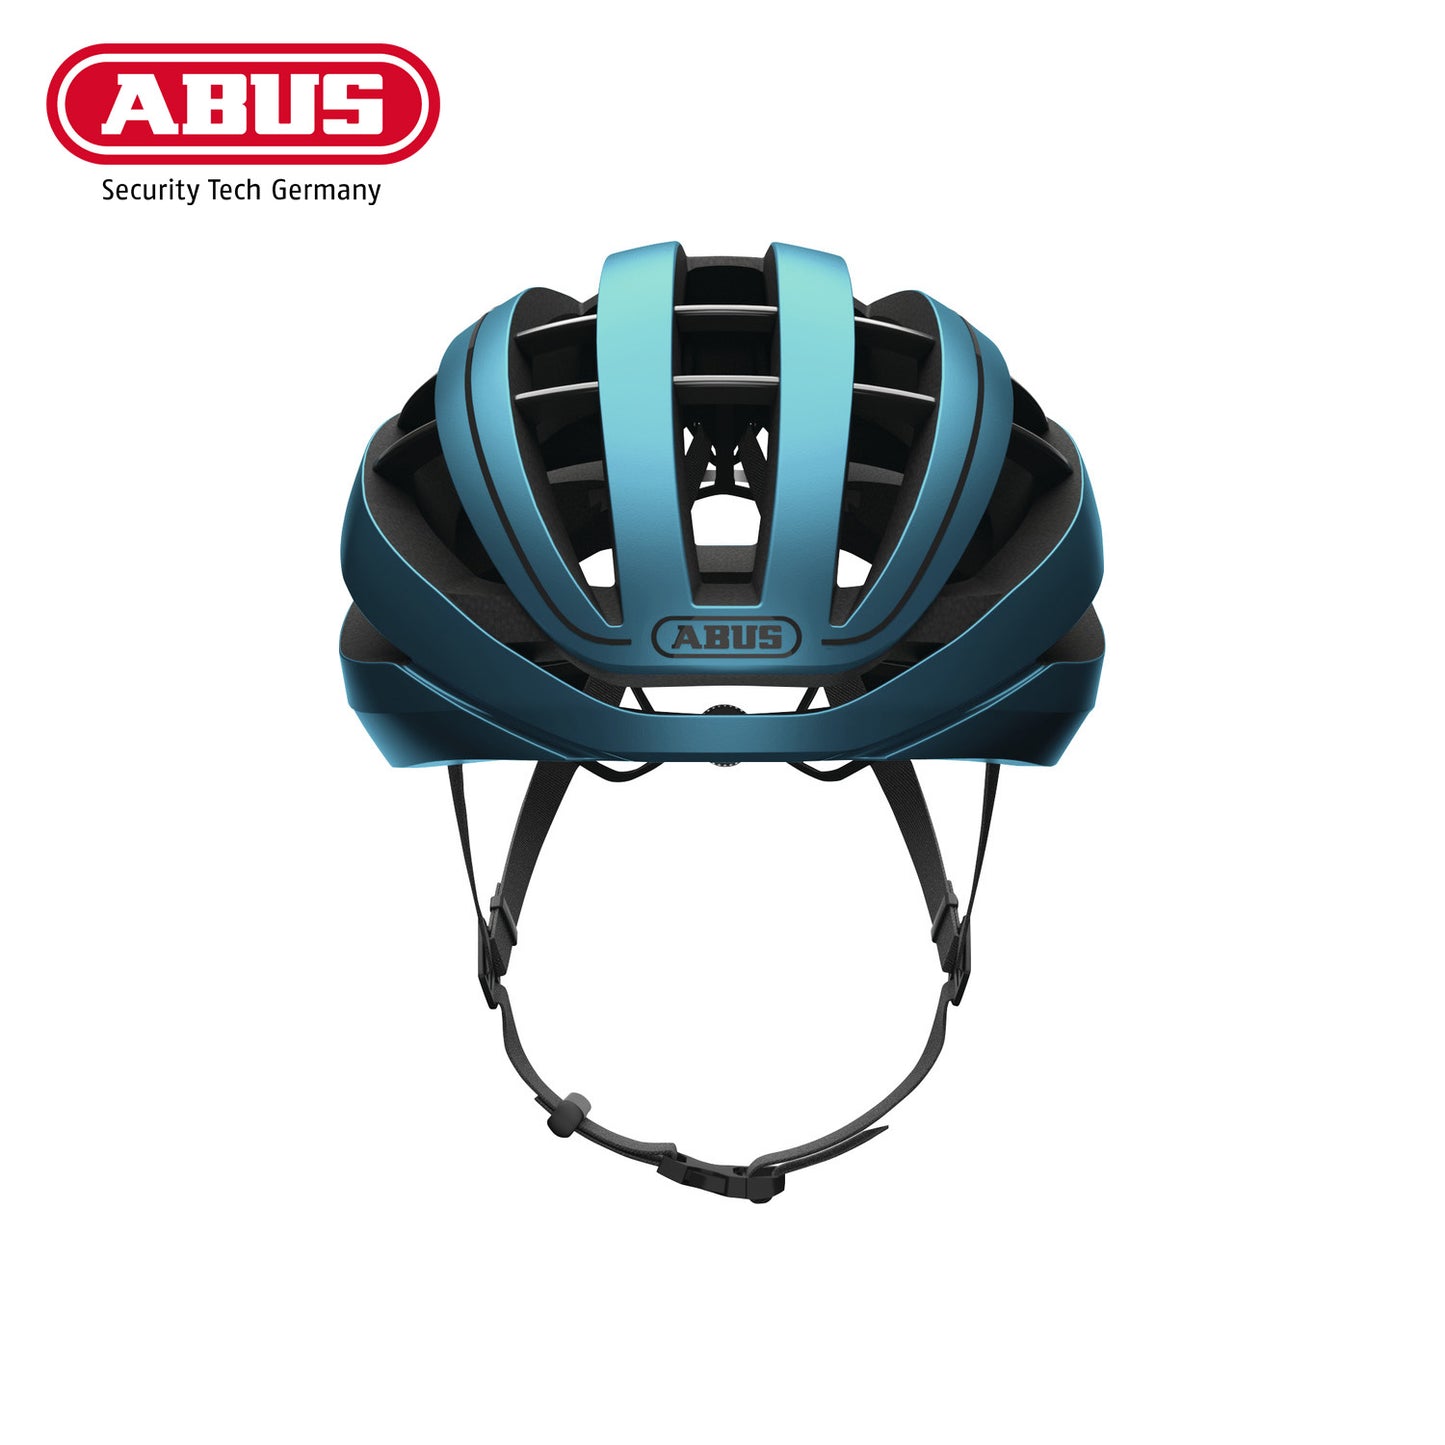 ABUS Road Helmet Aventor Bike Helmet - Steel Blue